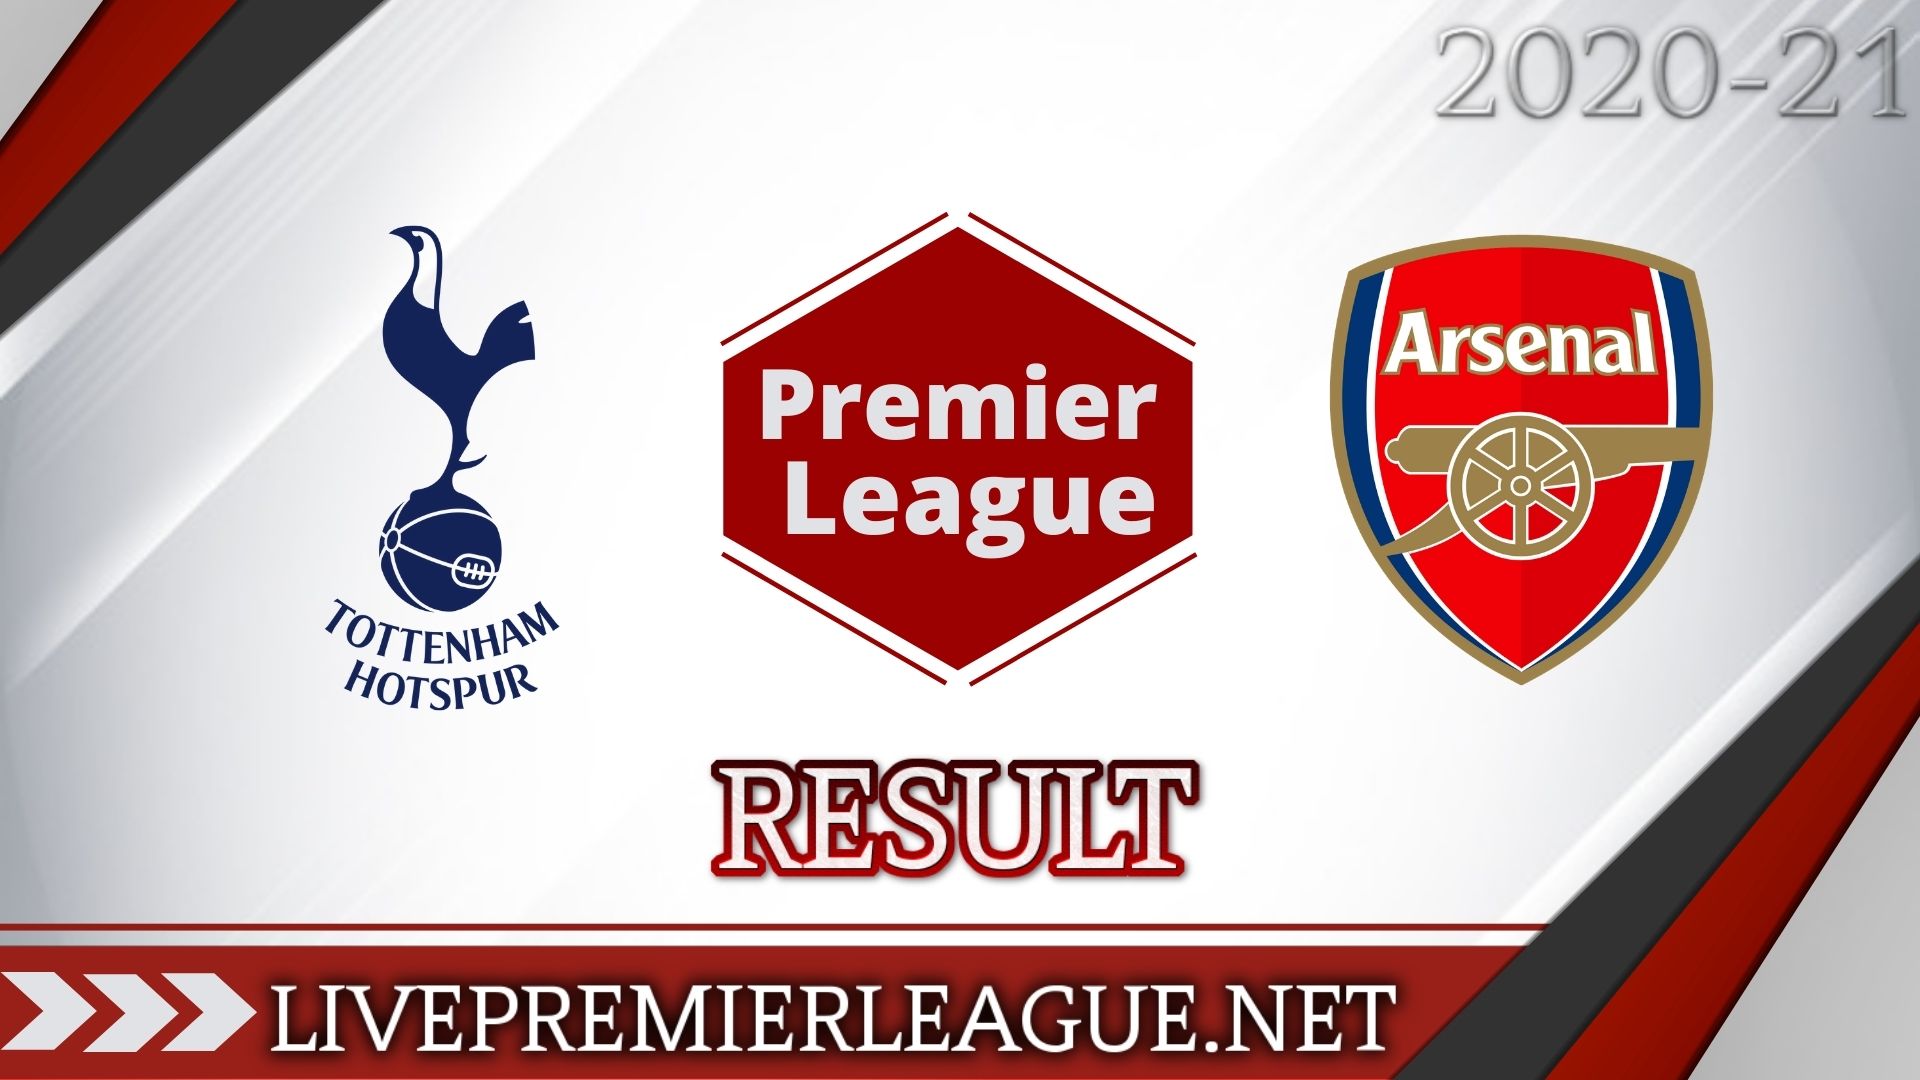 Tottenham Hotspur Vs Arsenal | Week 11 Result 2020